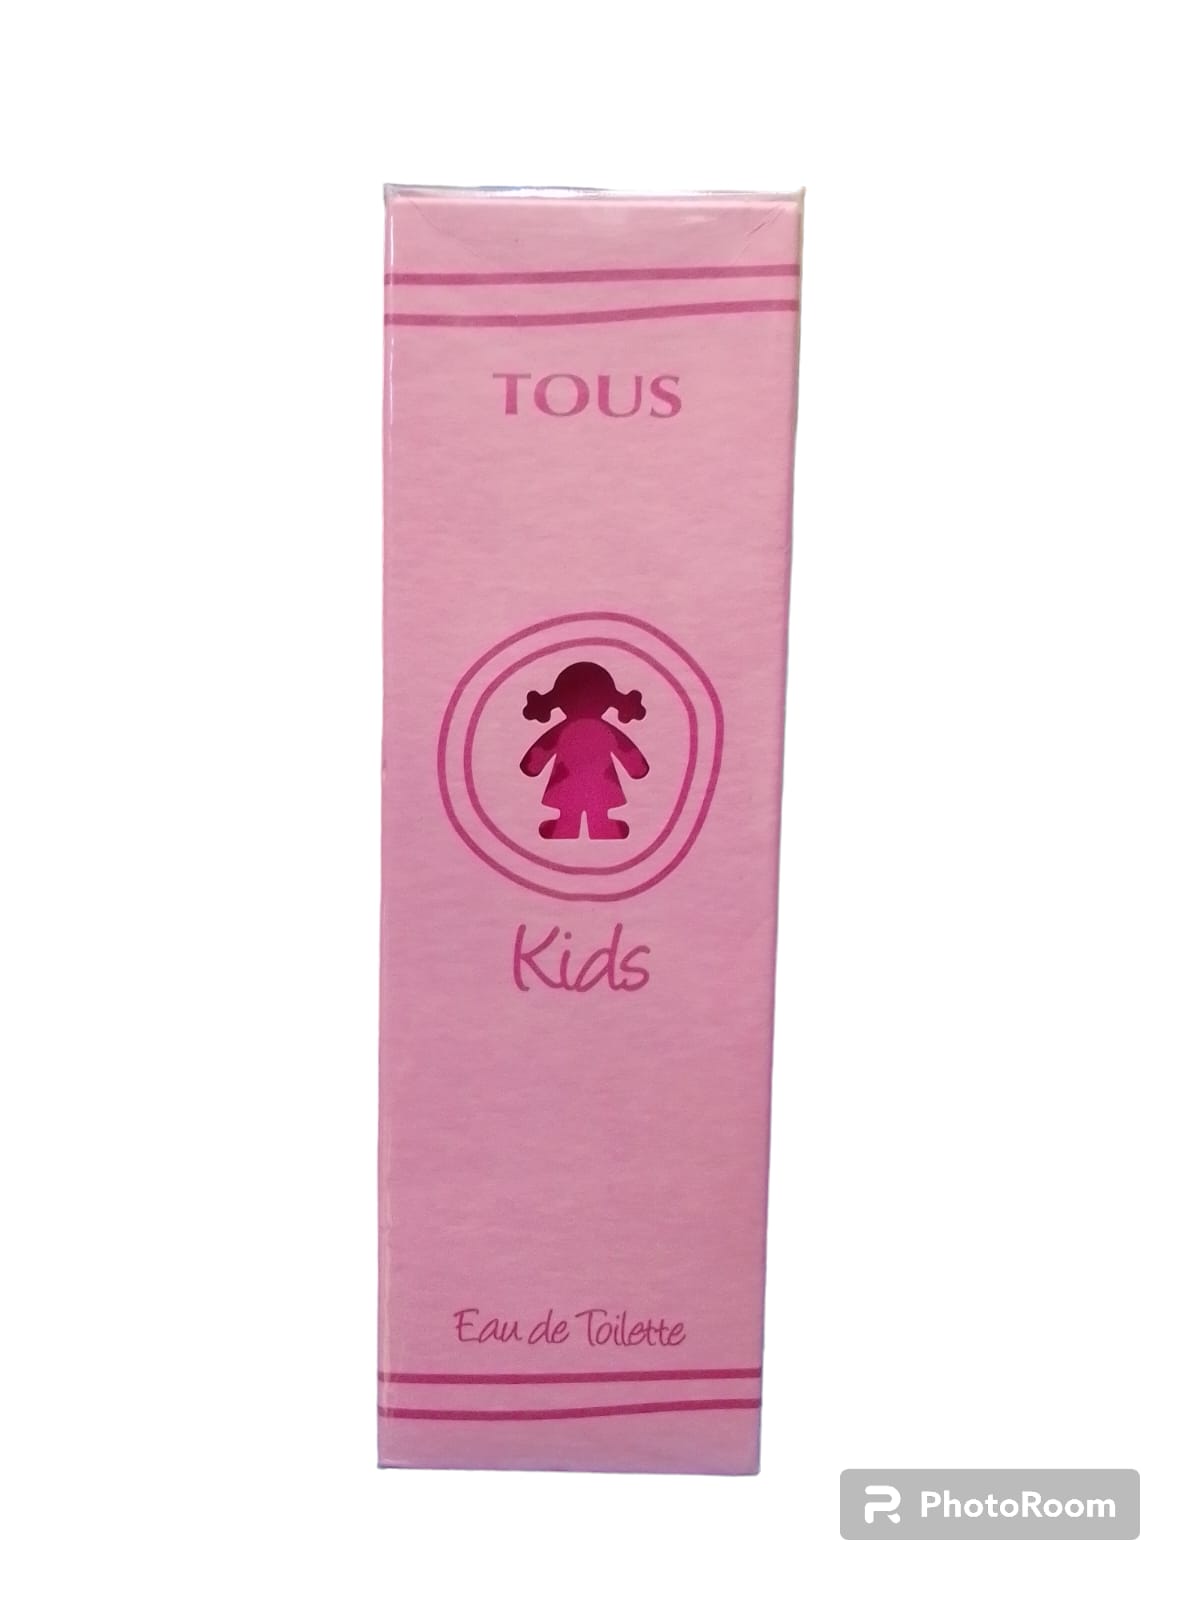 Perfume Tous Kids Woman